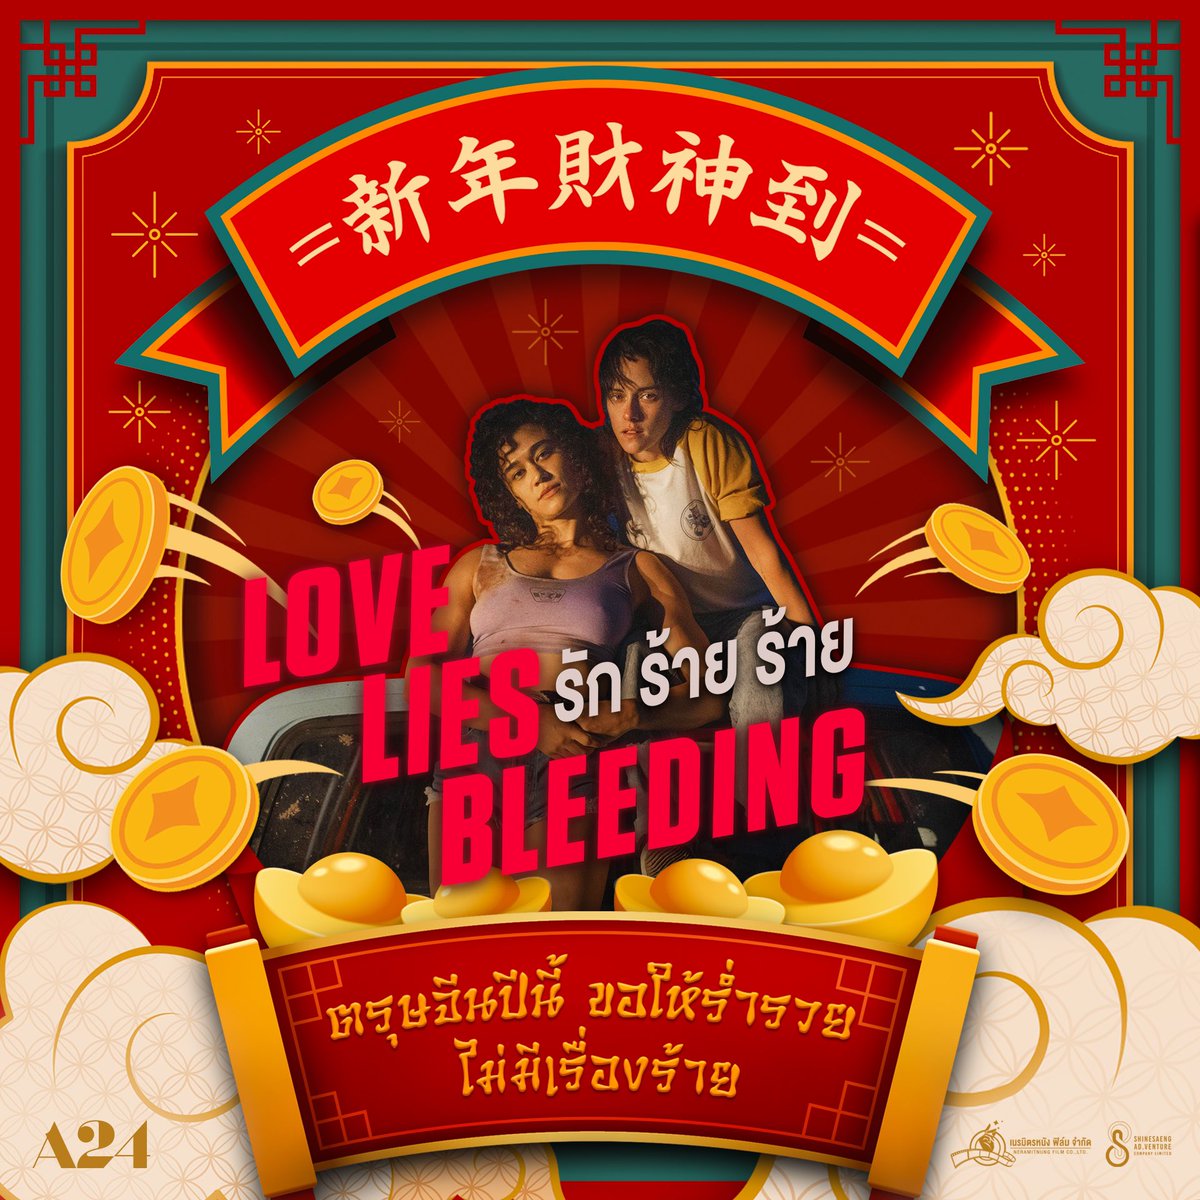 ตรุษจีนปีนี้ ขอให้ร่ำรวย ไม่มีเรื่องร้าย พบเจอแต่เรื่ิองดีๆ เข้ามาในชีวิต 

และติดตาม 
Love Lies Bleeding รัก ร้าย ร้าย
14 มีนาคมนี้ ในโรงภาพยนตร์

#LoveLiesBleedingTH #รักร้ายร้าย
#ShinesaengAdVenture 
#Neramitnungfilm #เนรมิตรหนังฟิล์ม #ฉายแสงแอดเวนเจอร์